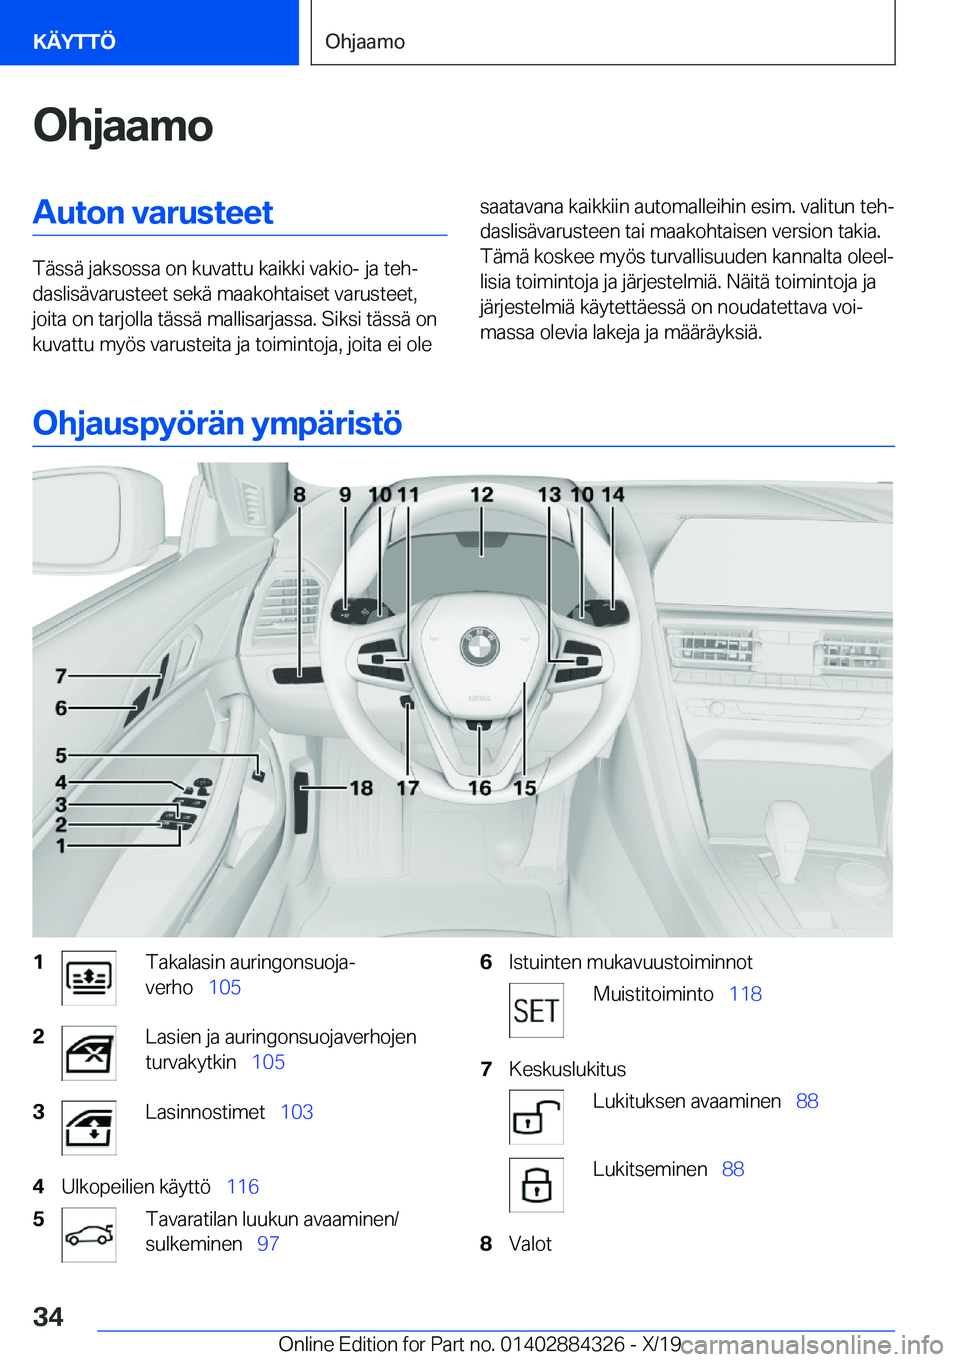 BMW 8 SERIES GRAN COUPE 2020  Omistajan Käsikirja (in Finnish) �O�h�j�a�a�m�o�A�u�t�o�n��v�a�r�u�s�t�e�e�t
�T�